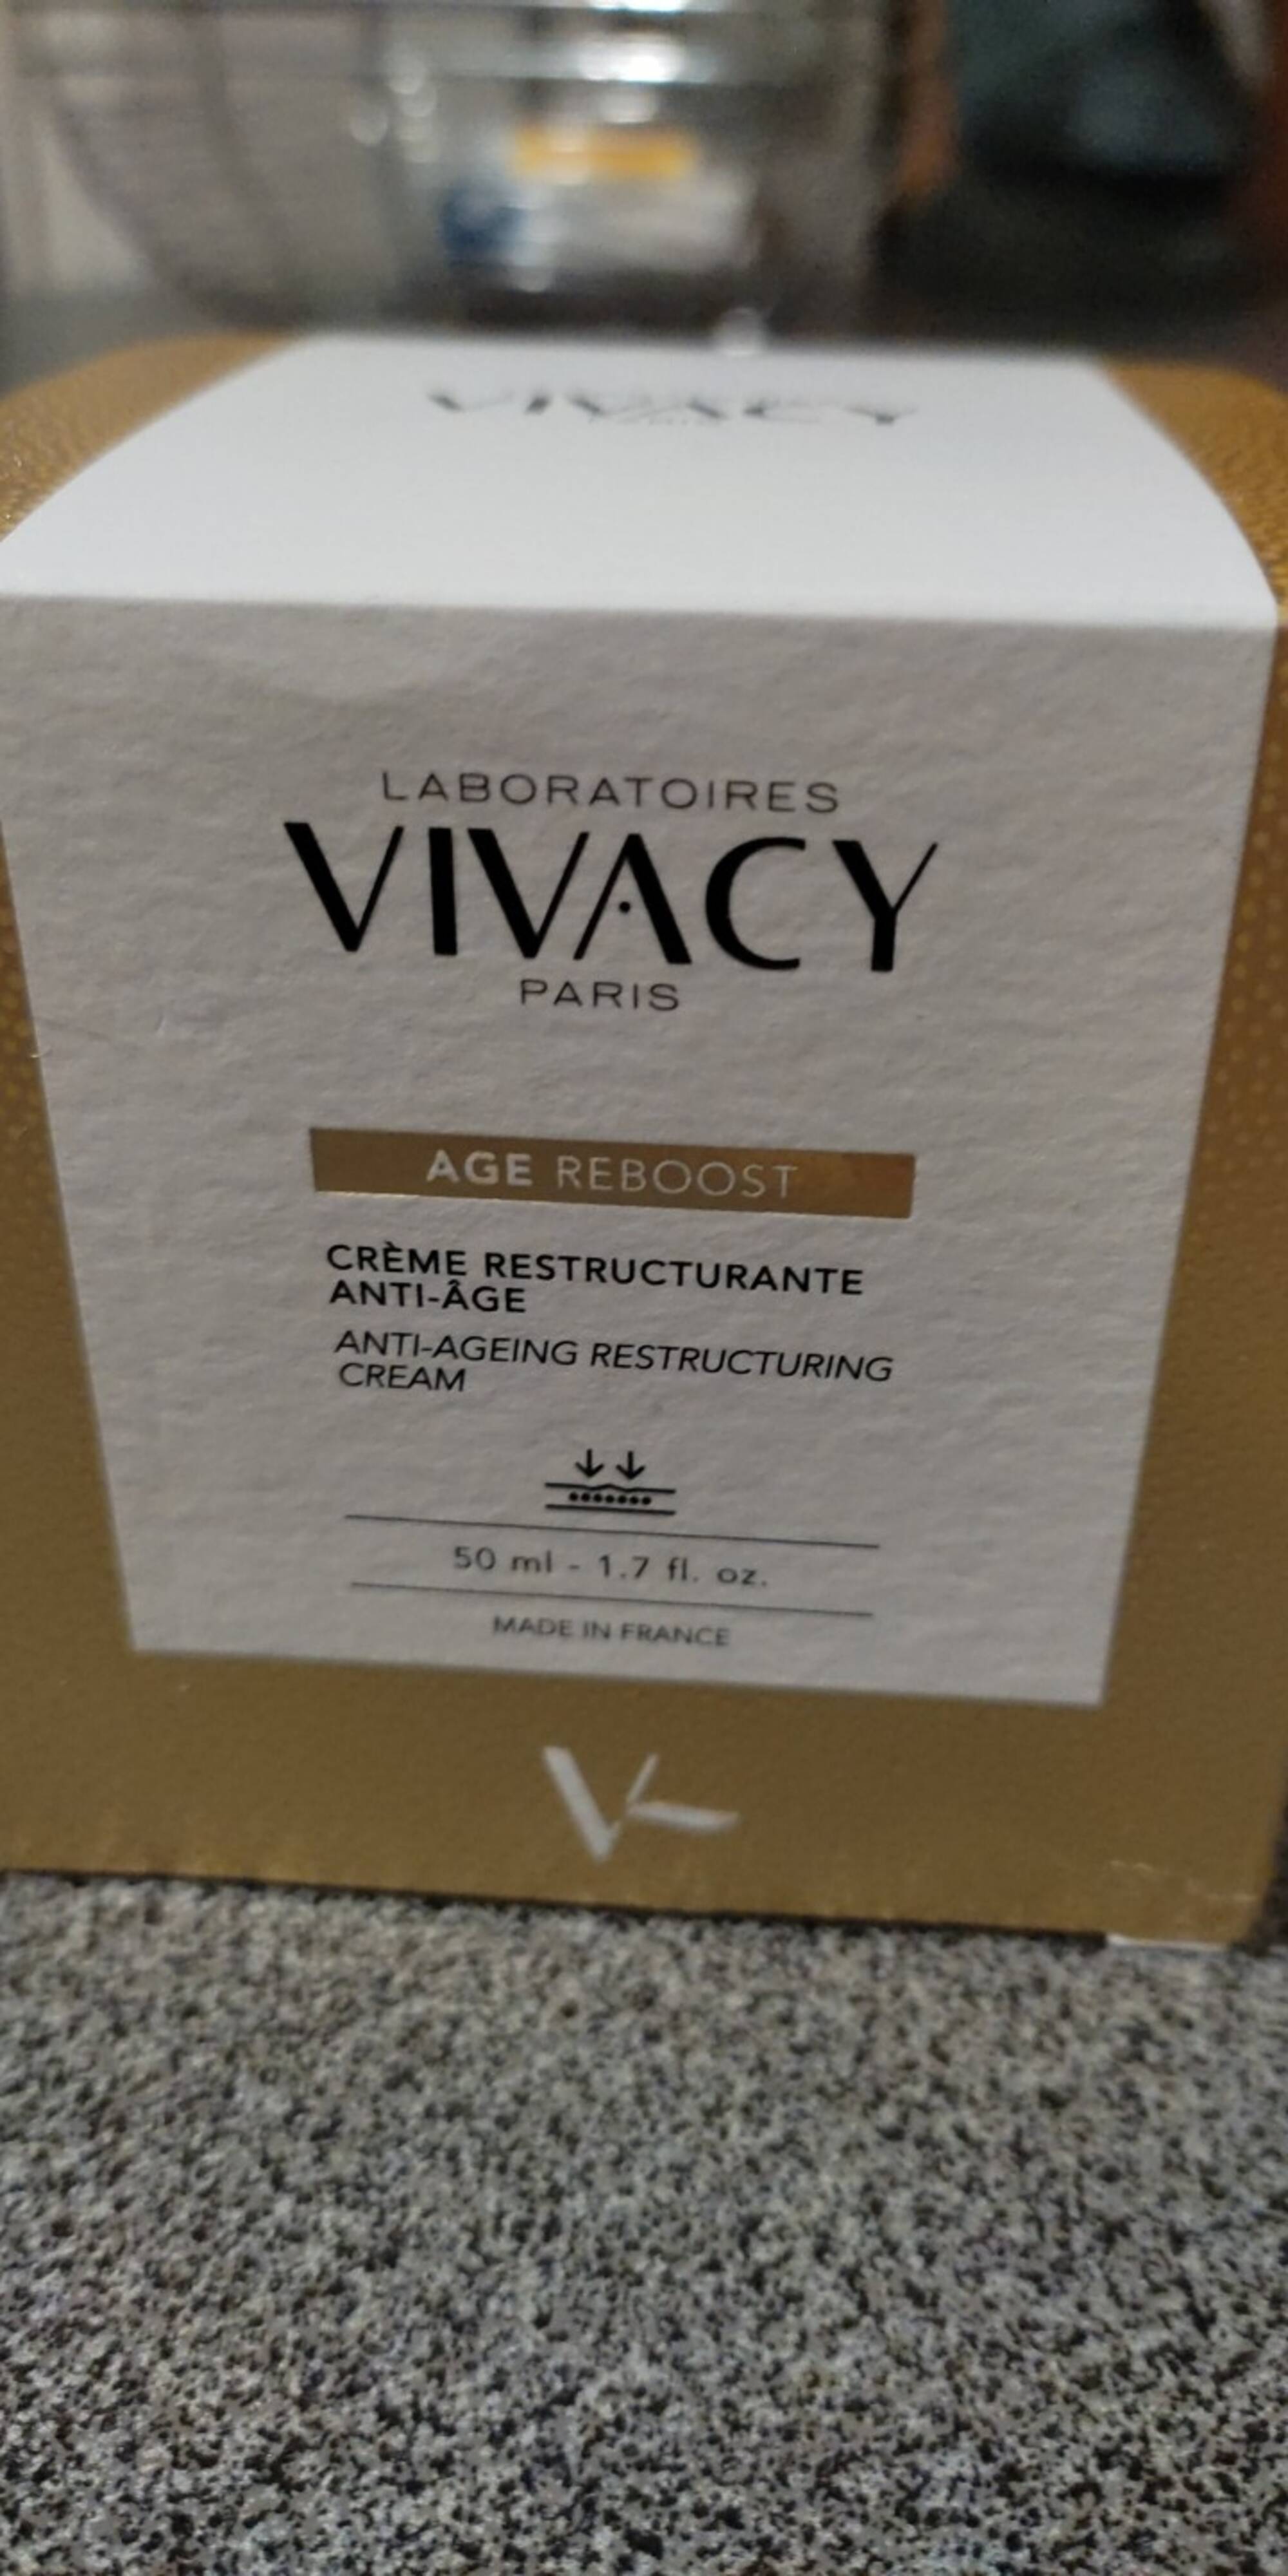 LABORATOIRES VIVACY - Age reboost - Crème restructurante anti-âge